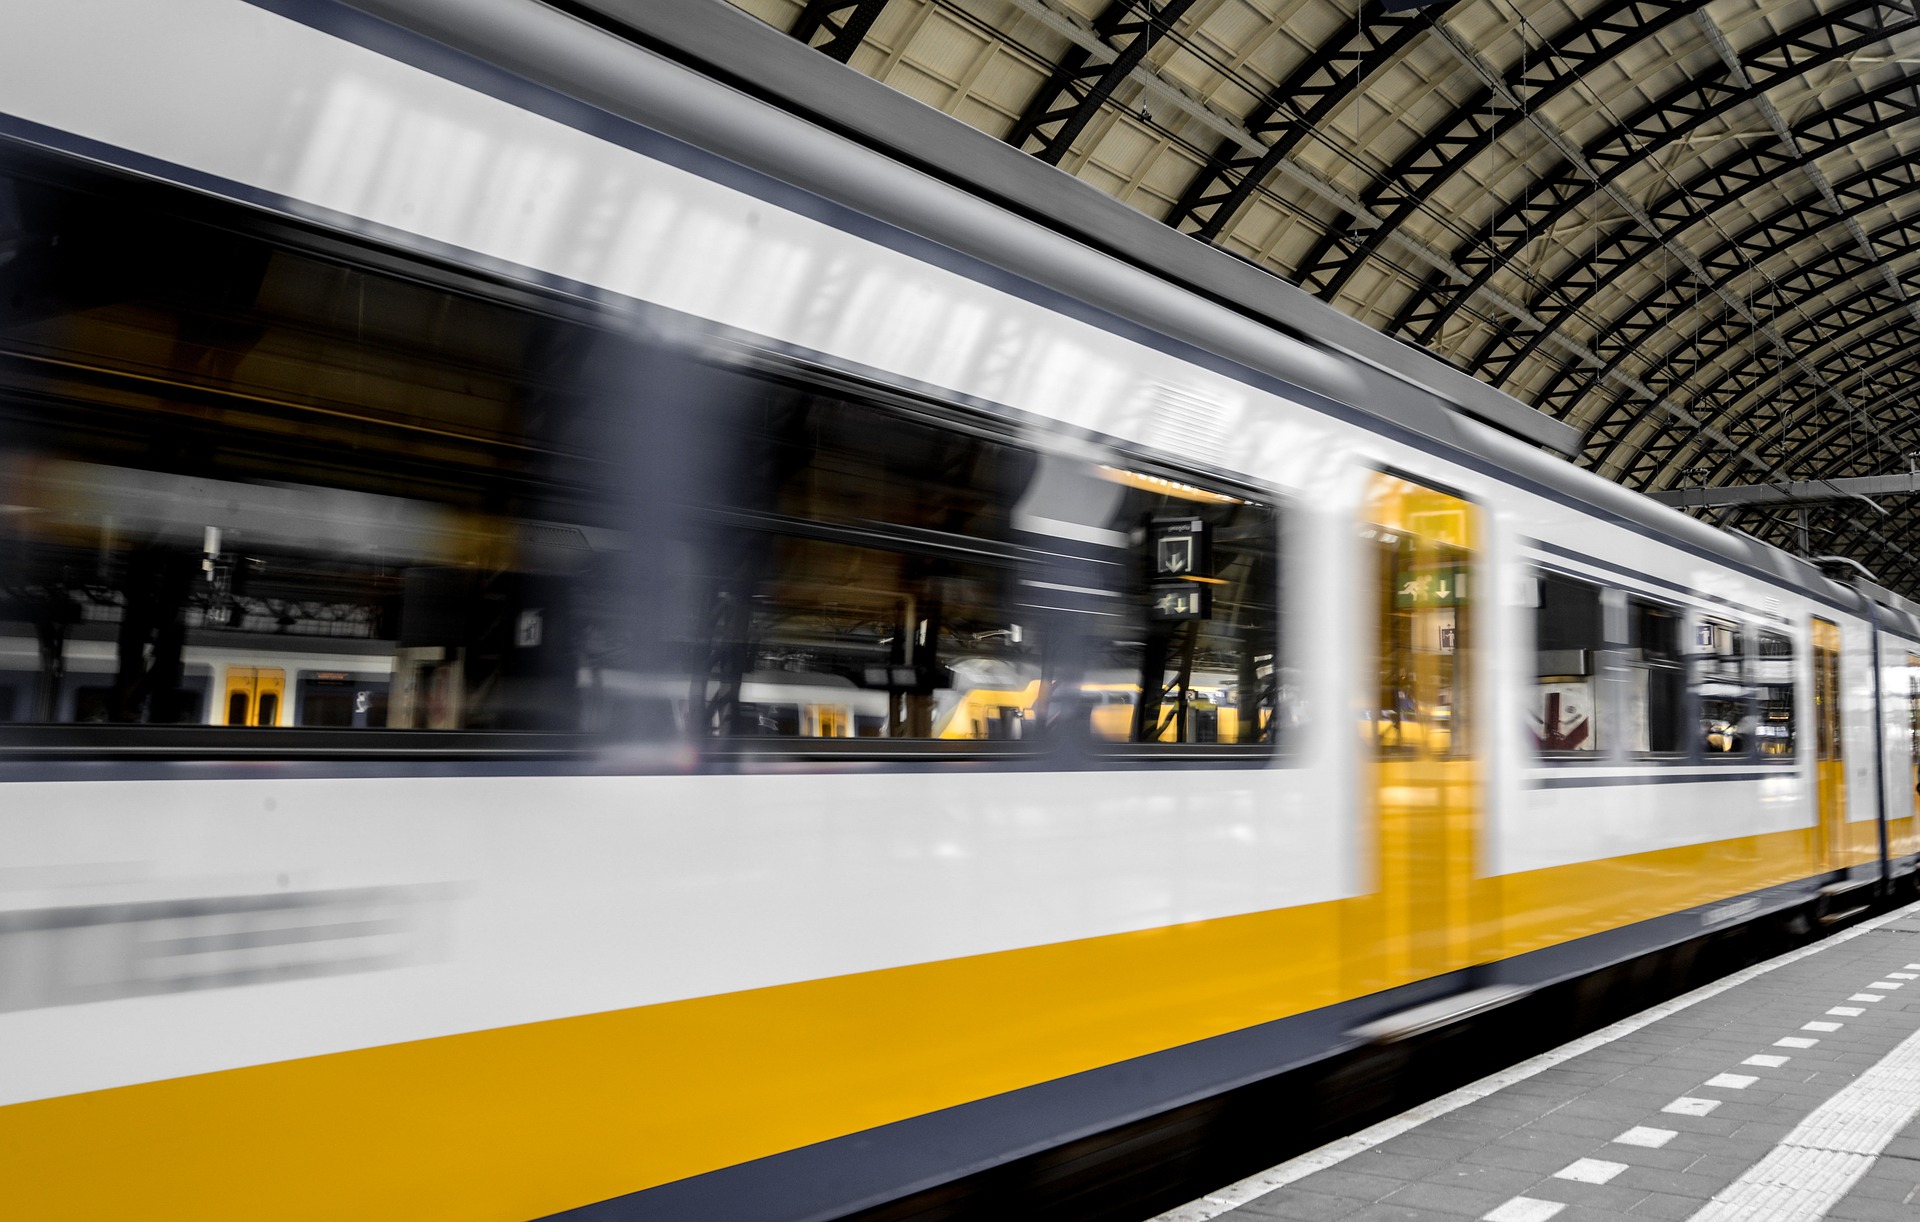 Проект сети ночных поездов соединит 200 городов Европы, в том числе Киев и Львов